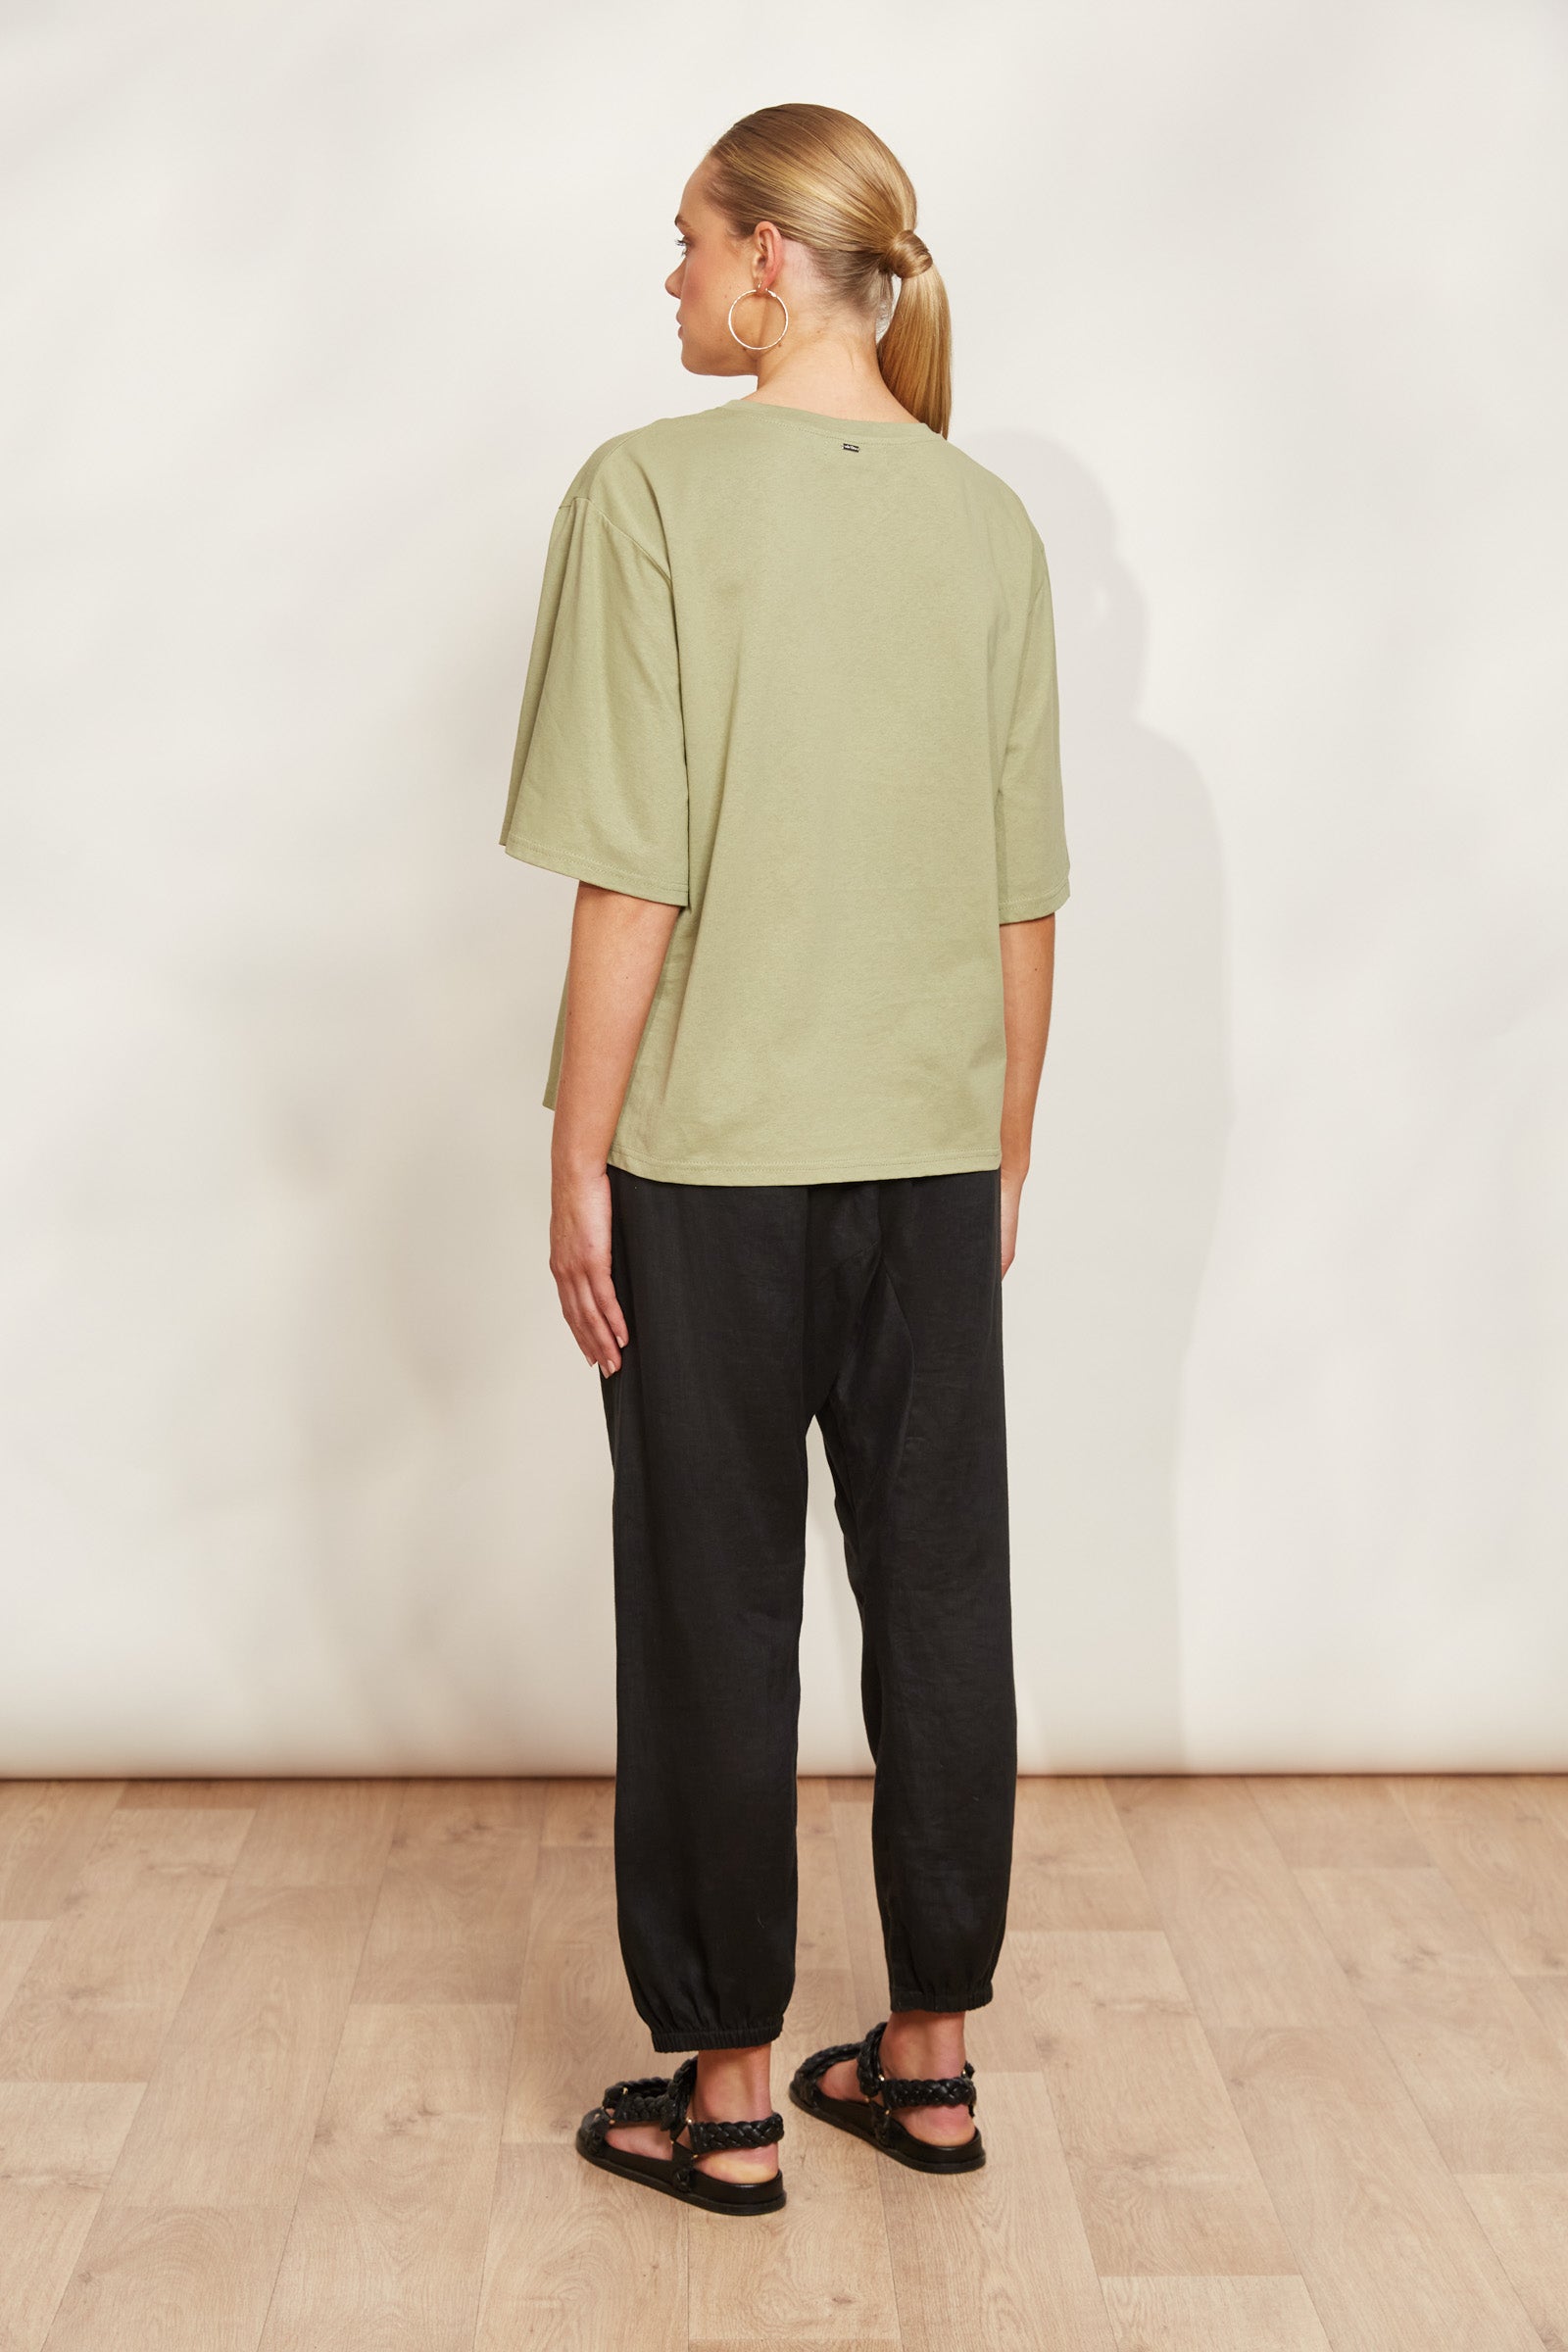 Studio Tshirt - Khaki - eb&ive Clothing - Top Tshirt S/S